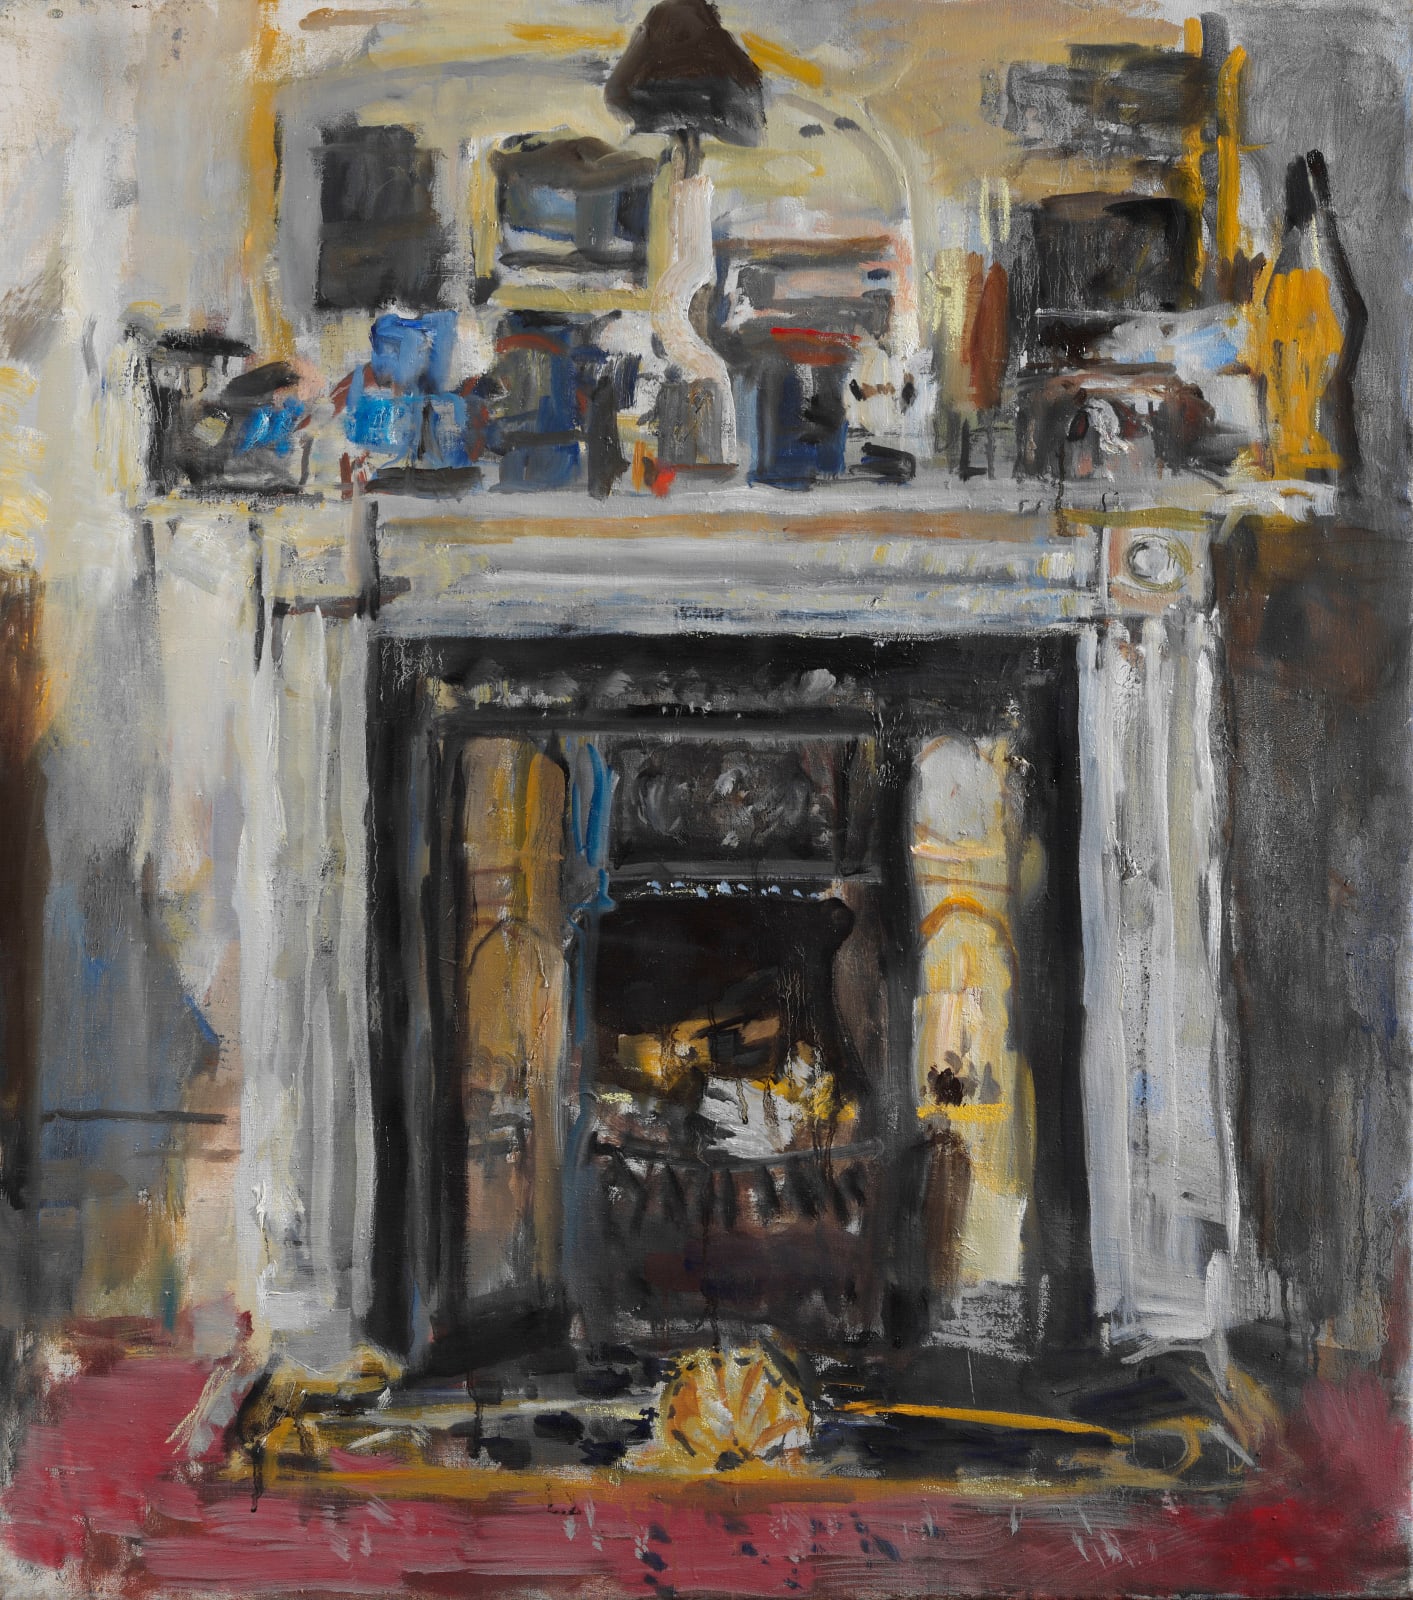 ANTHONY EYTON, The Fireplace